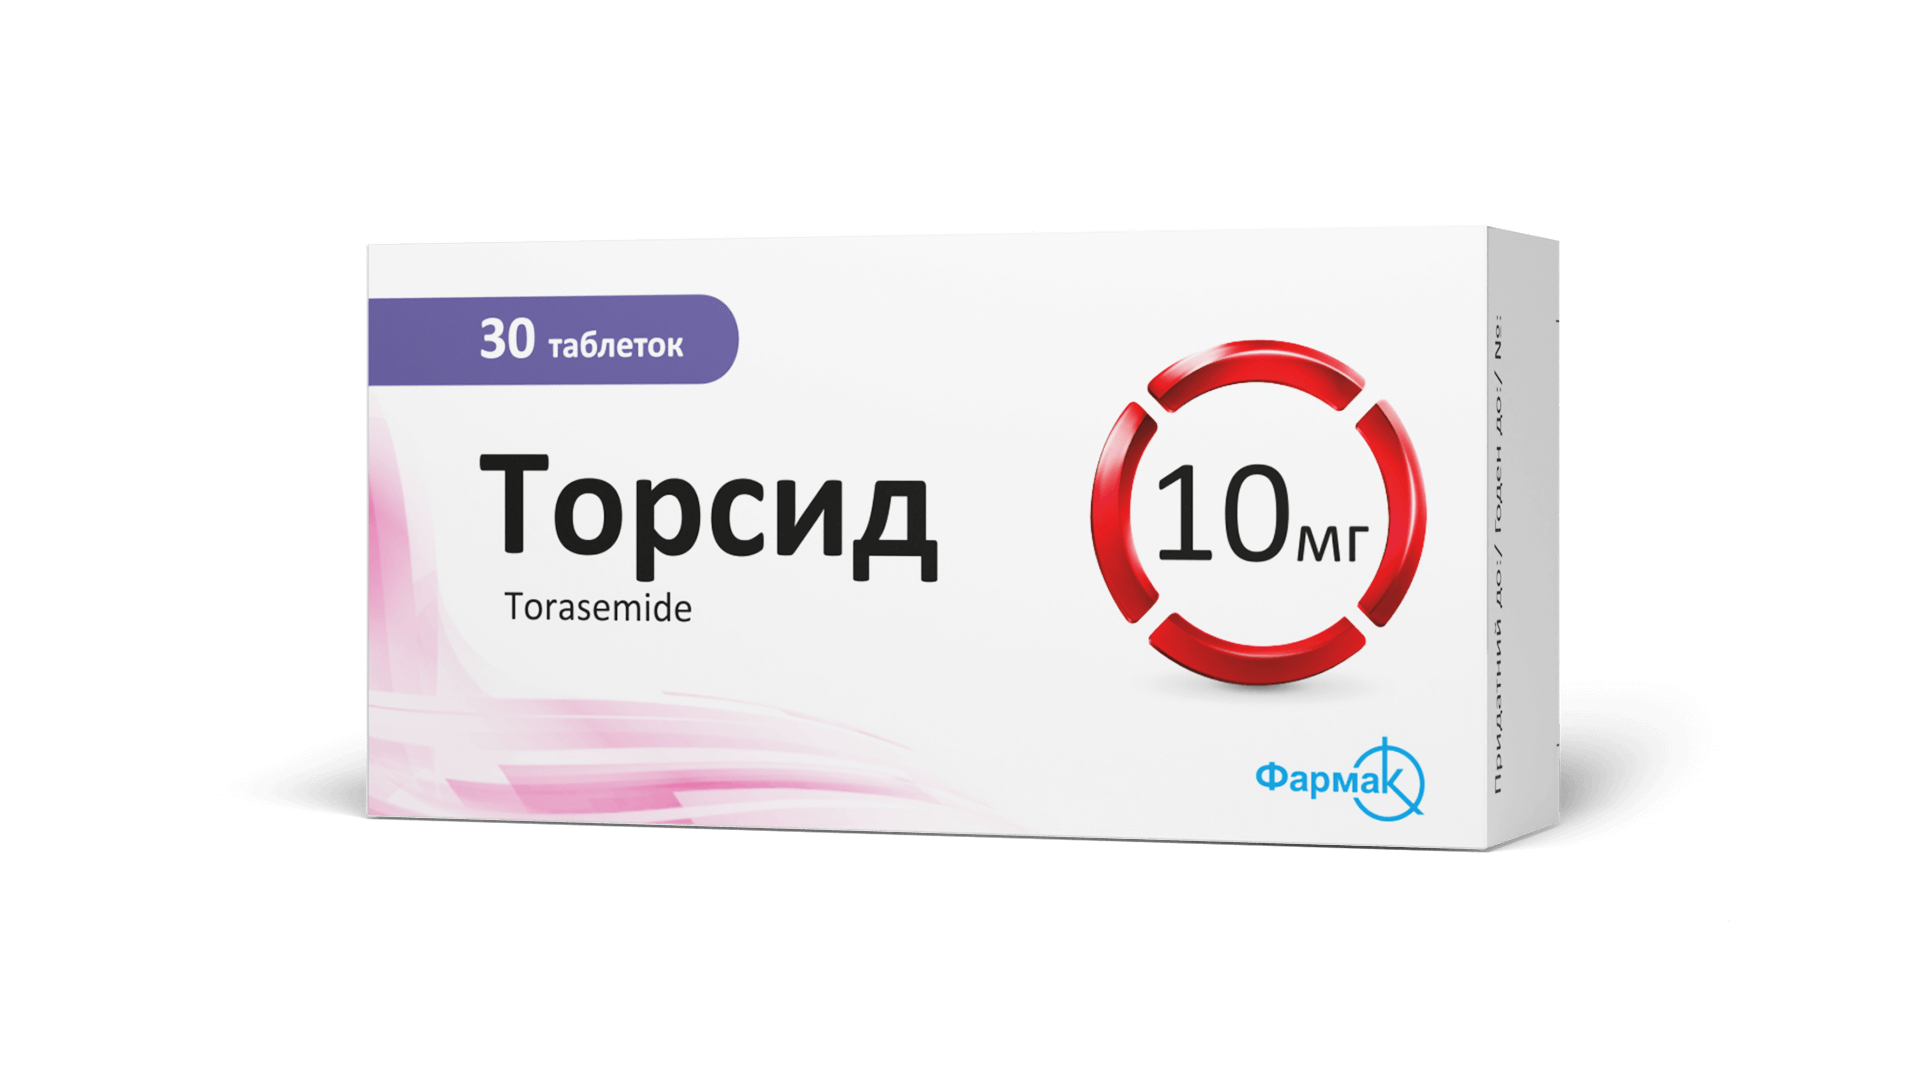 Торсид® (таблетки) 10 мг (3)